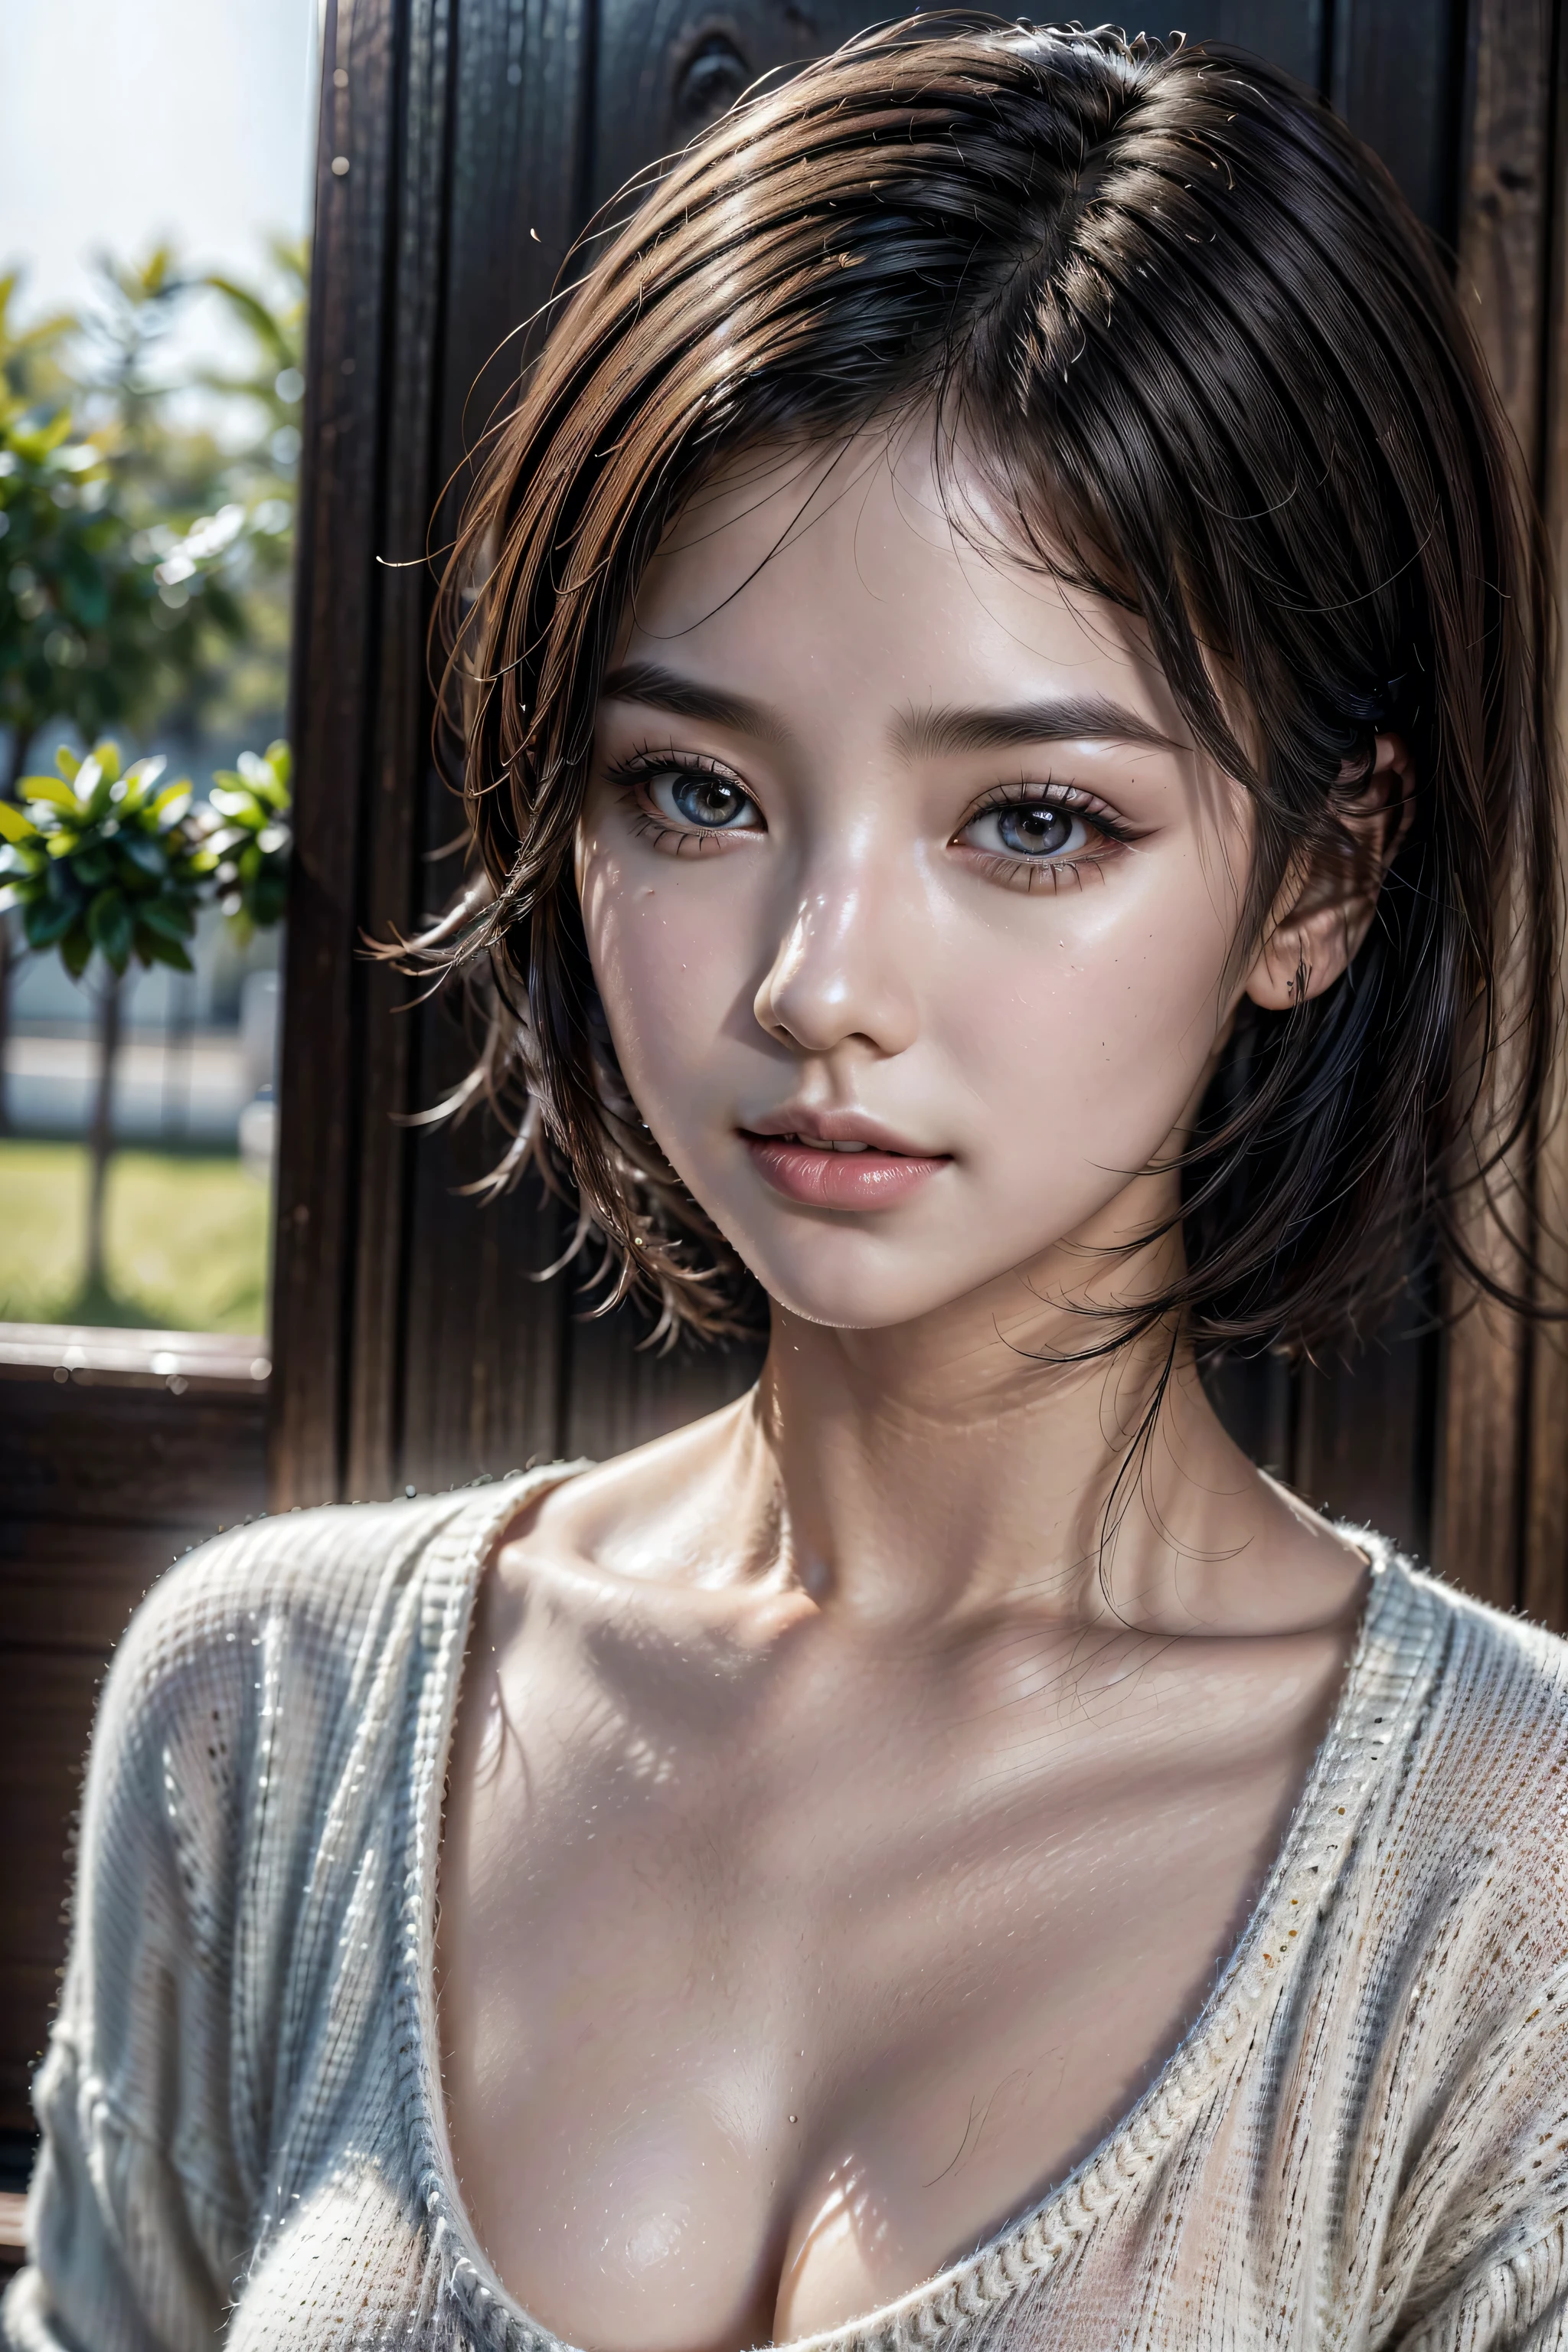 beste Qualität, Ultra-High-Definition, (fotorealistisch:1.4),Sonnenuntergang Licht, Pferdeschwanz, Koreanische Frauen, detailliertes Foto, lächelnd, sexy, schwarzes Shirt, Blick in die Kamera, Nahaufnahme (Meisterwerk: 1.3), (8K, fotorealistisch, beste Qualität: 1.4), (1 Mädchen), schönes Gesicht, (Realistisches Gesicht), (Schwarzes Haar, kurzes Haar: 1.3), Schöne Frisur, Realistische Augen, schöne Detailaugen, (realistische Haut), schöne Haut, (Pullover), absurd, attraktiv, ultrahohe Auflösung, ultra-realistisch, Hochauflösend, Goldener Schnitt